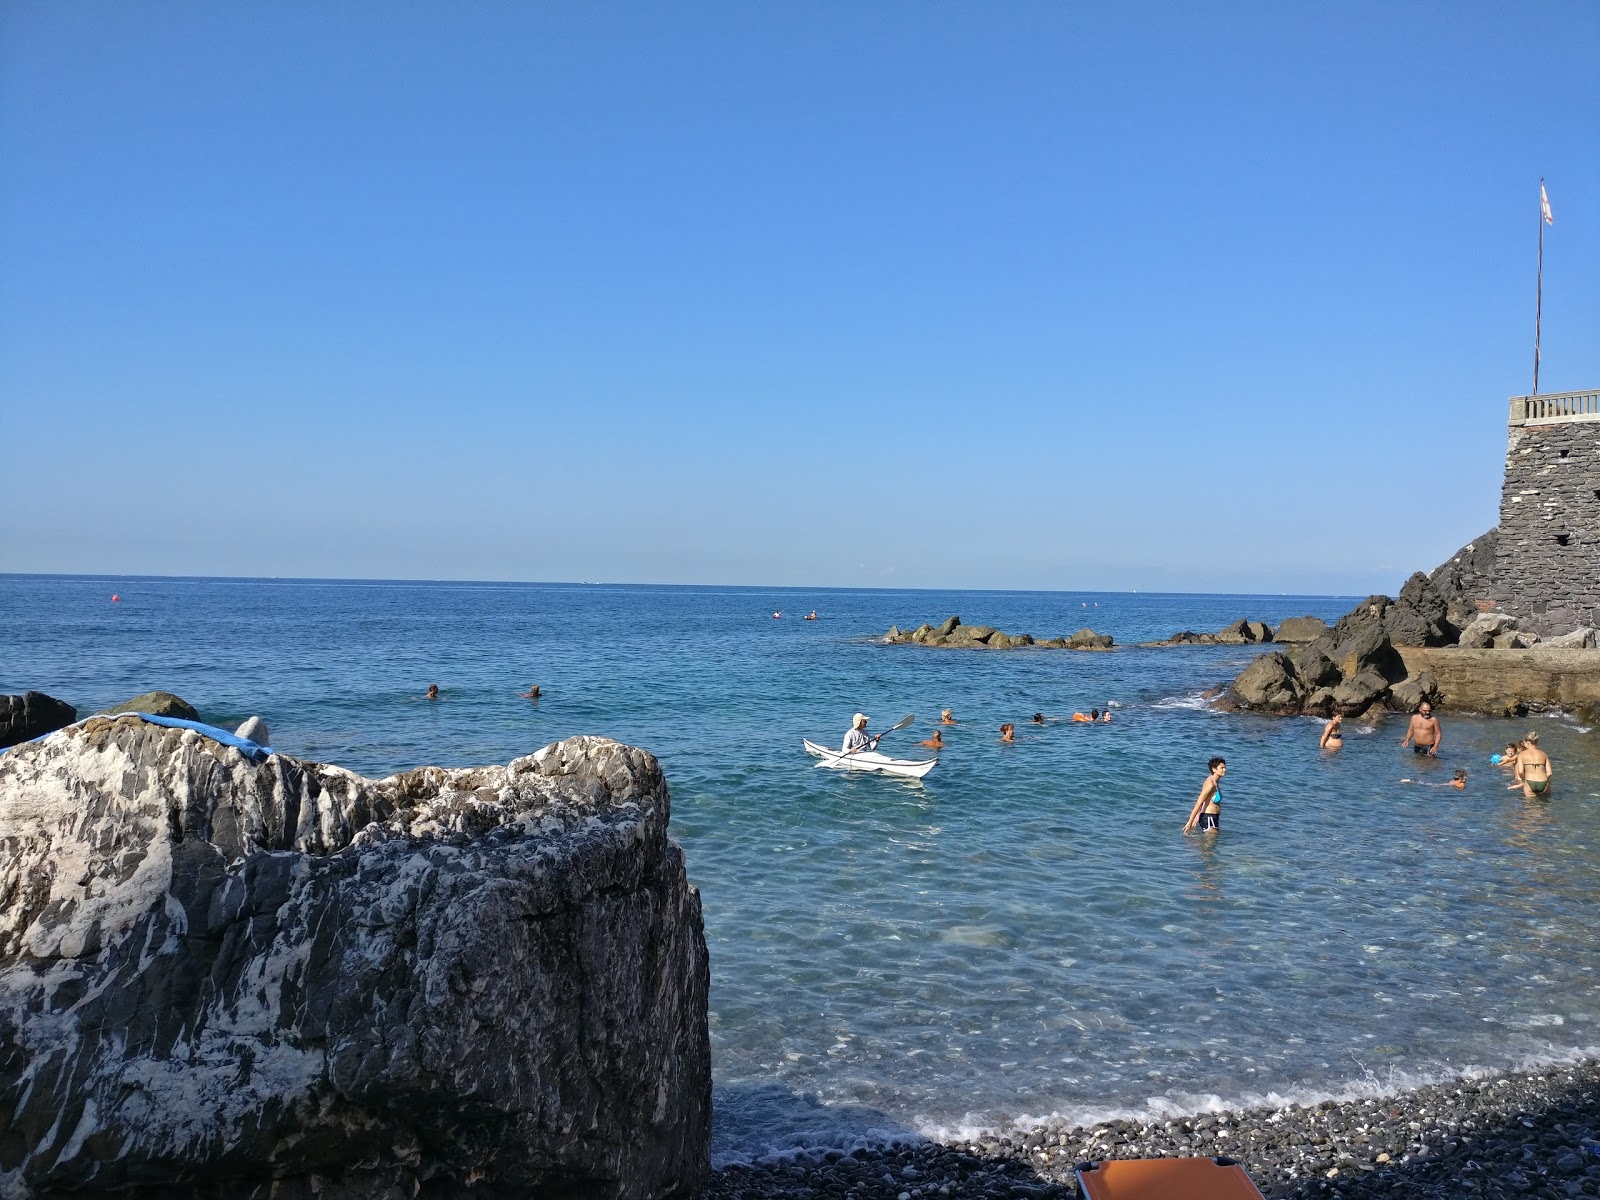 Spiaggia Murcarolo'in fotoğrafı küçük koy ile birlikte